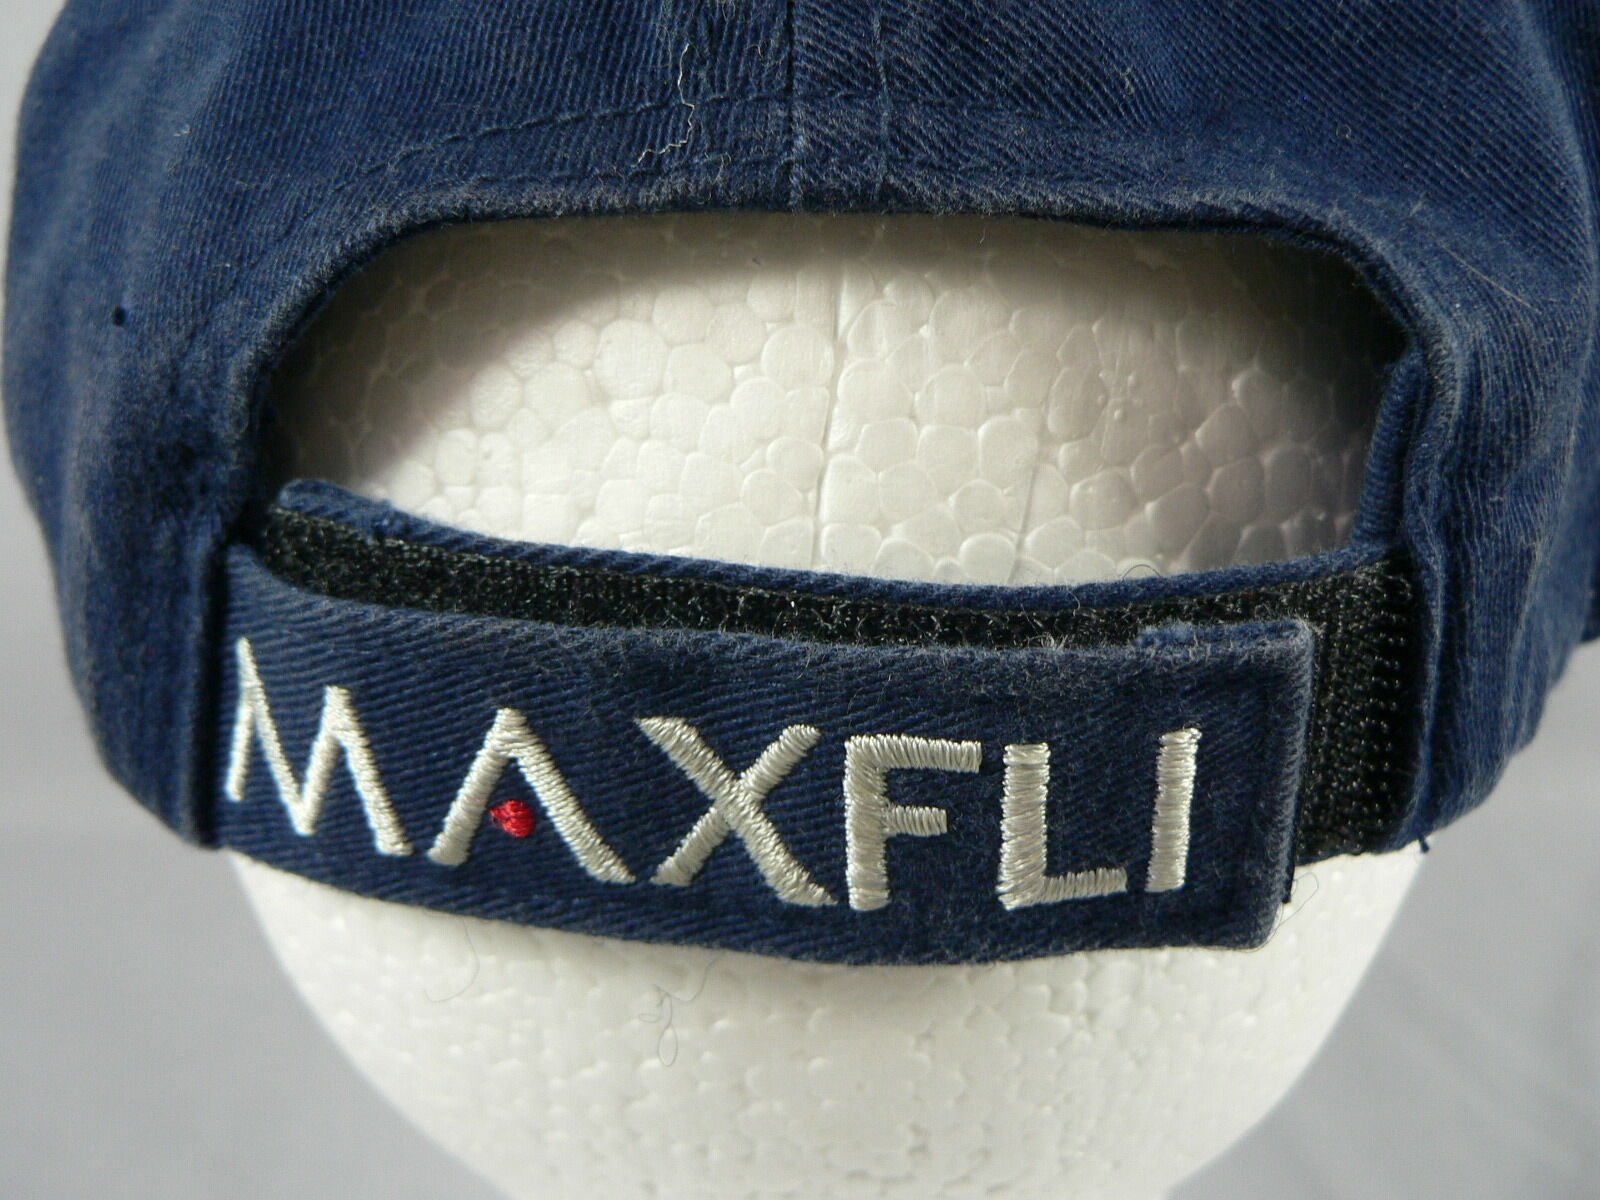 Maxfli Revolution Golf Baseball Cap Hat Adj. OSFM hook & loop strap